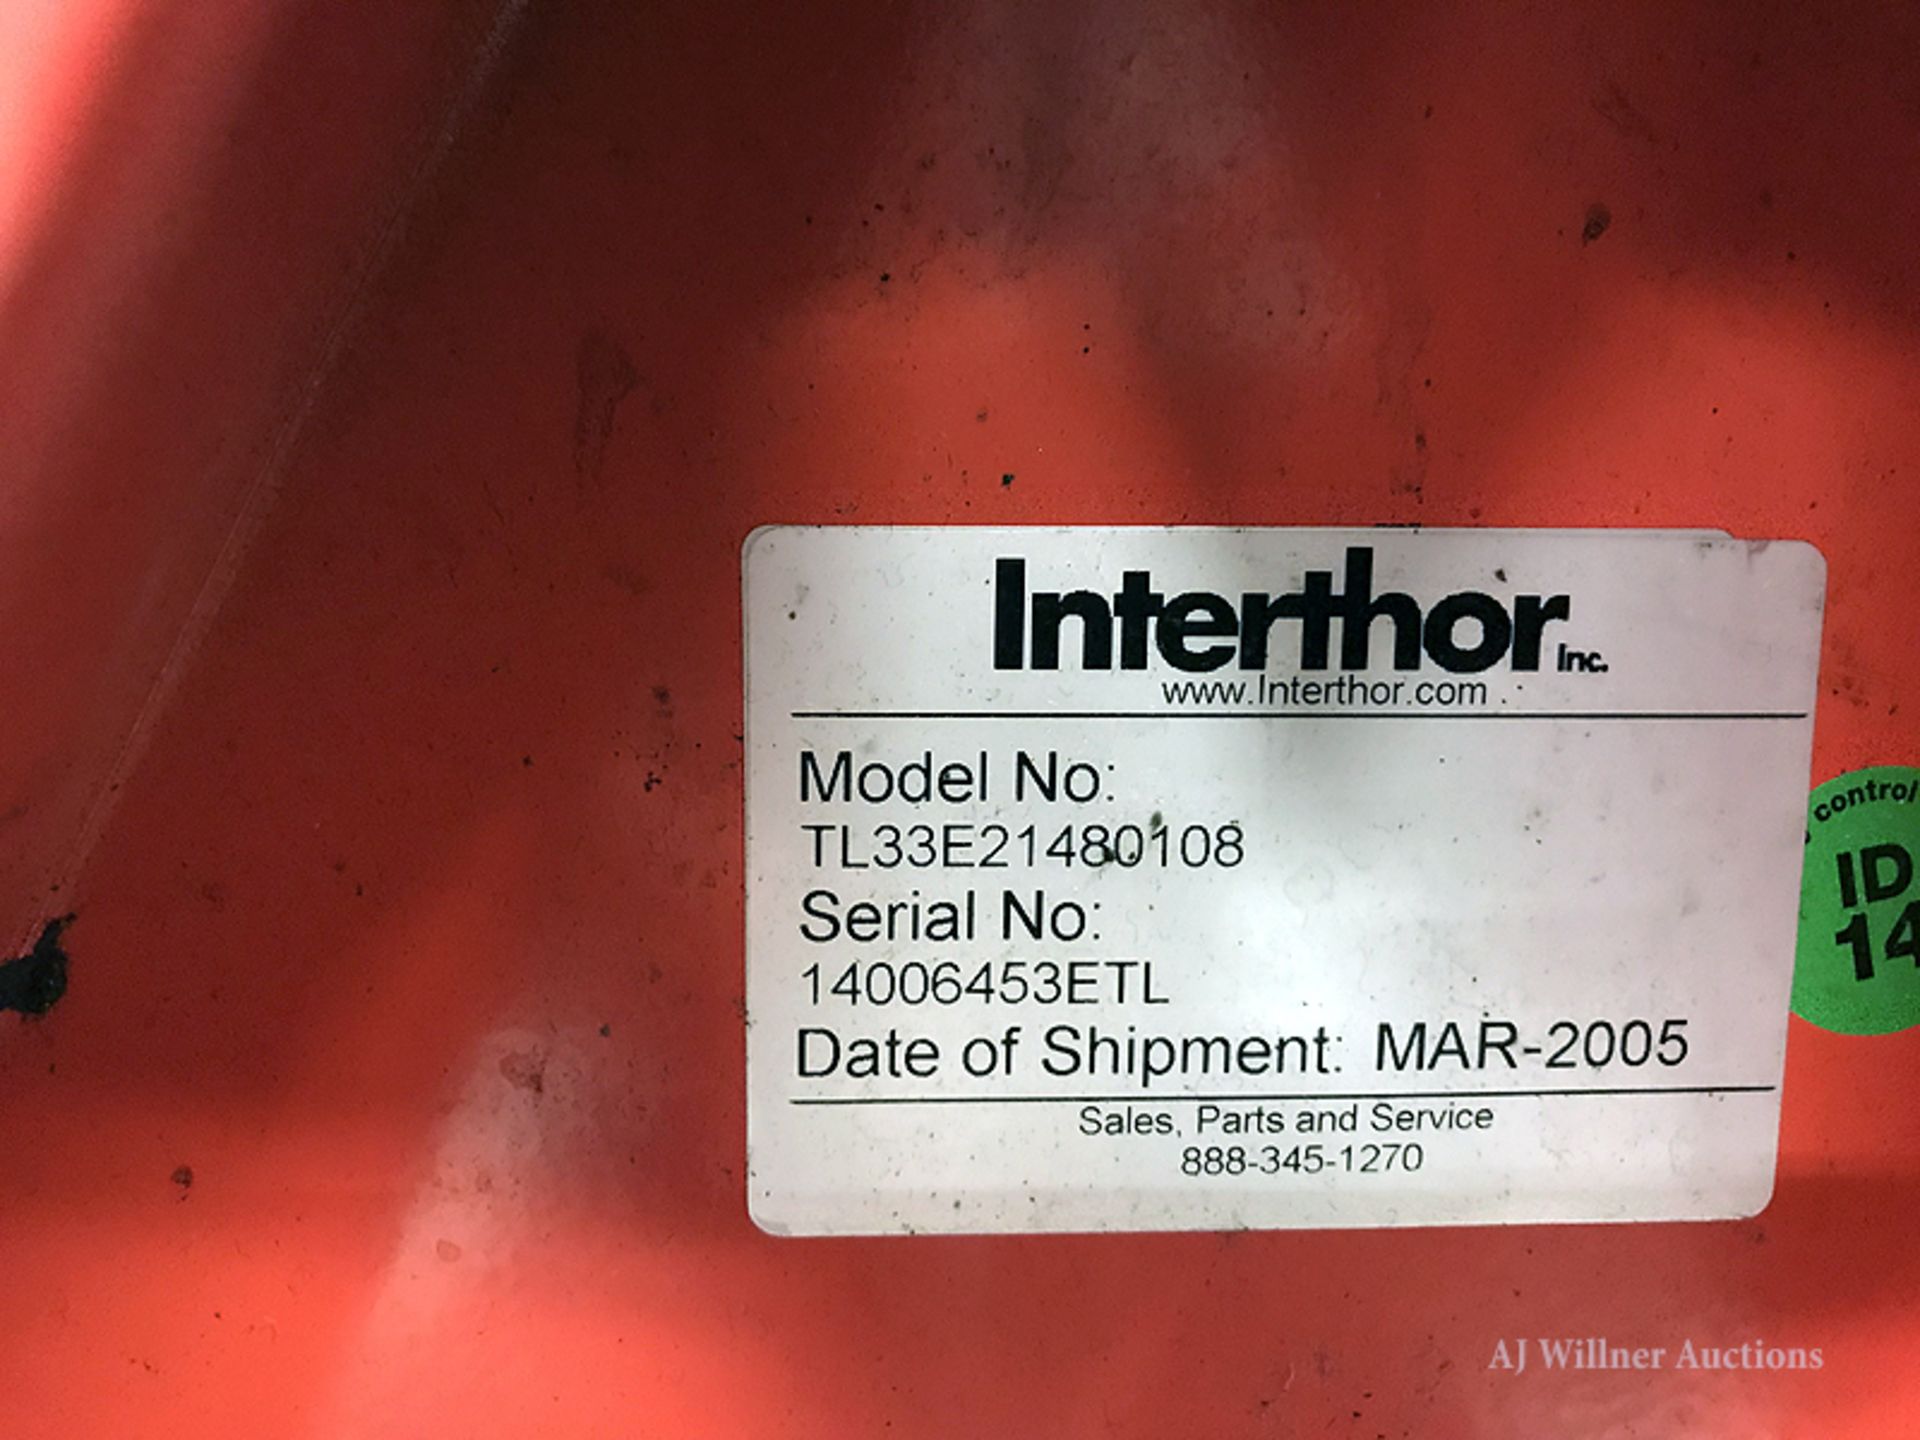 Interthor Thorklift 12 Volt Pallet Jack - Image 3 of 4